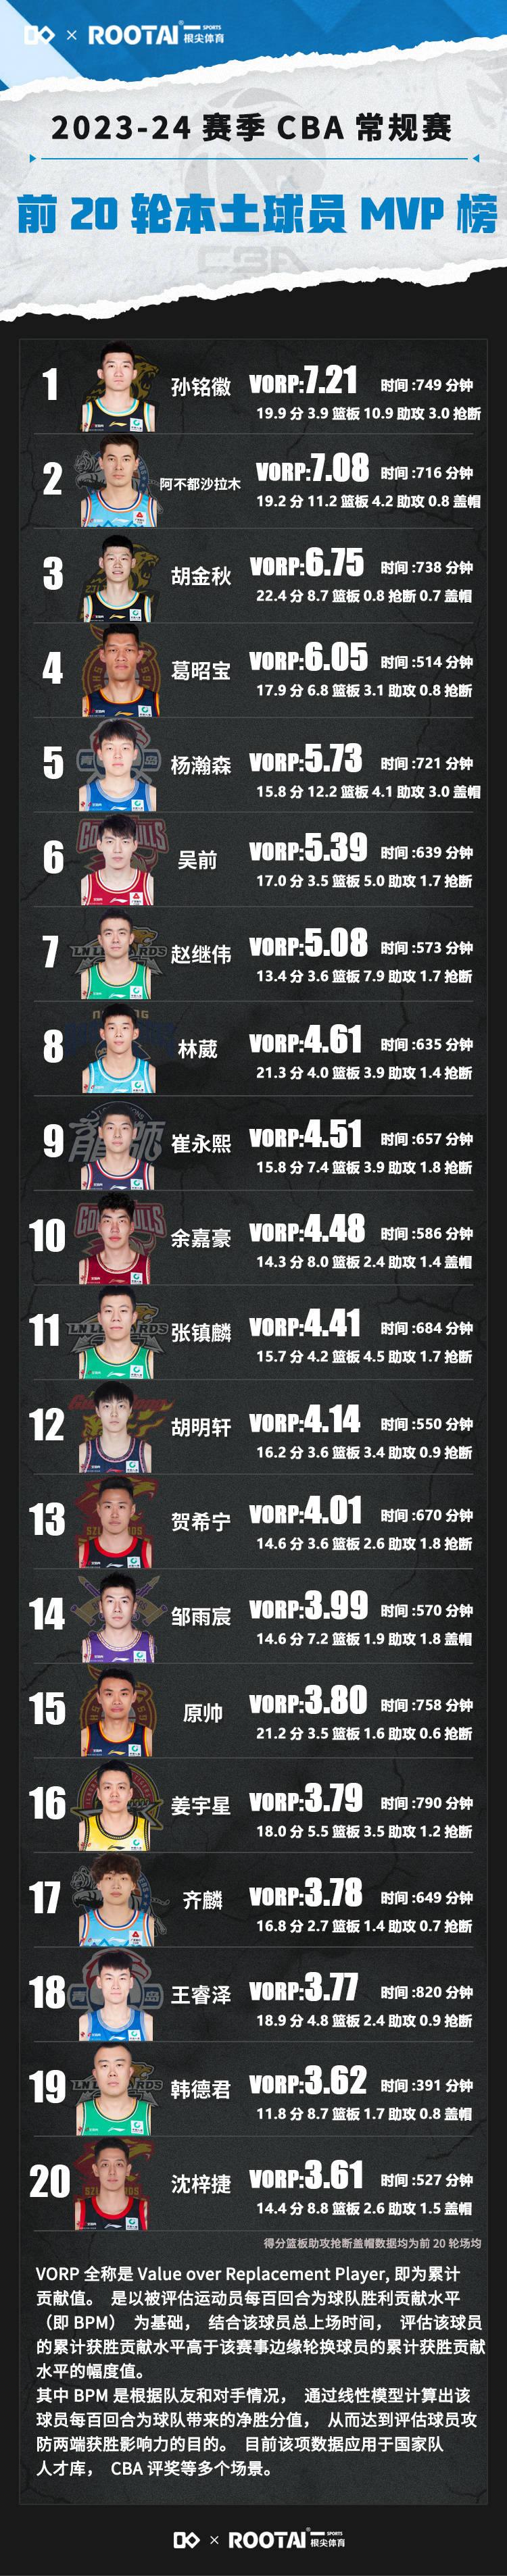 168体育-CBA本土队员最佳球员榜-孙铭徽领跑 杨瀚森第五